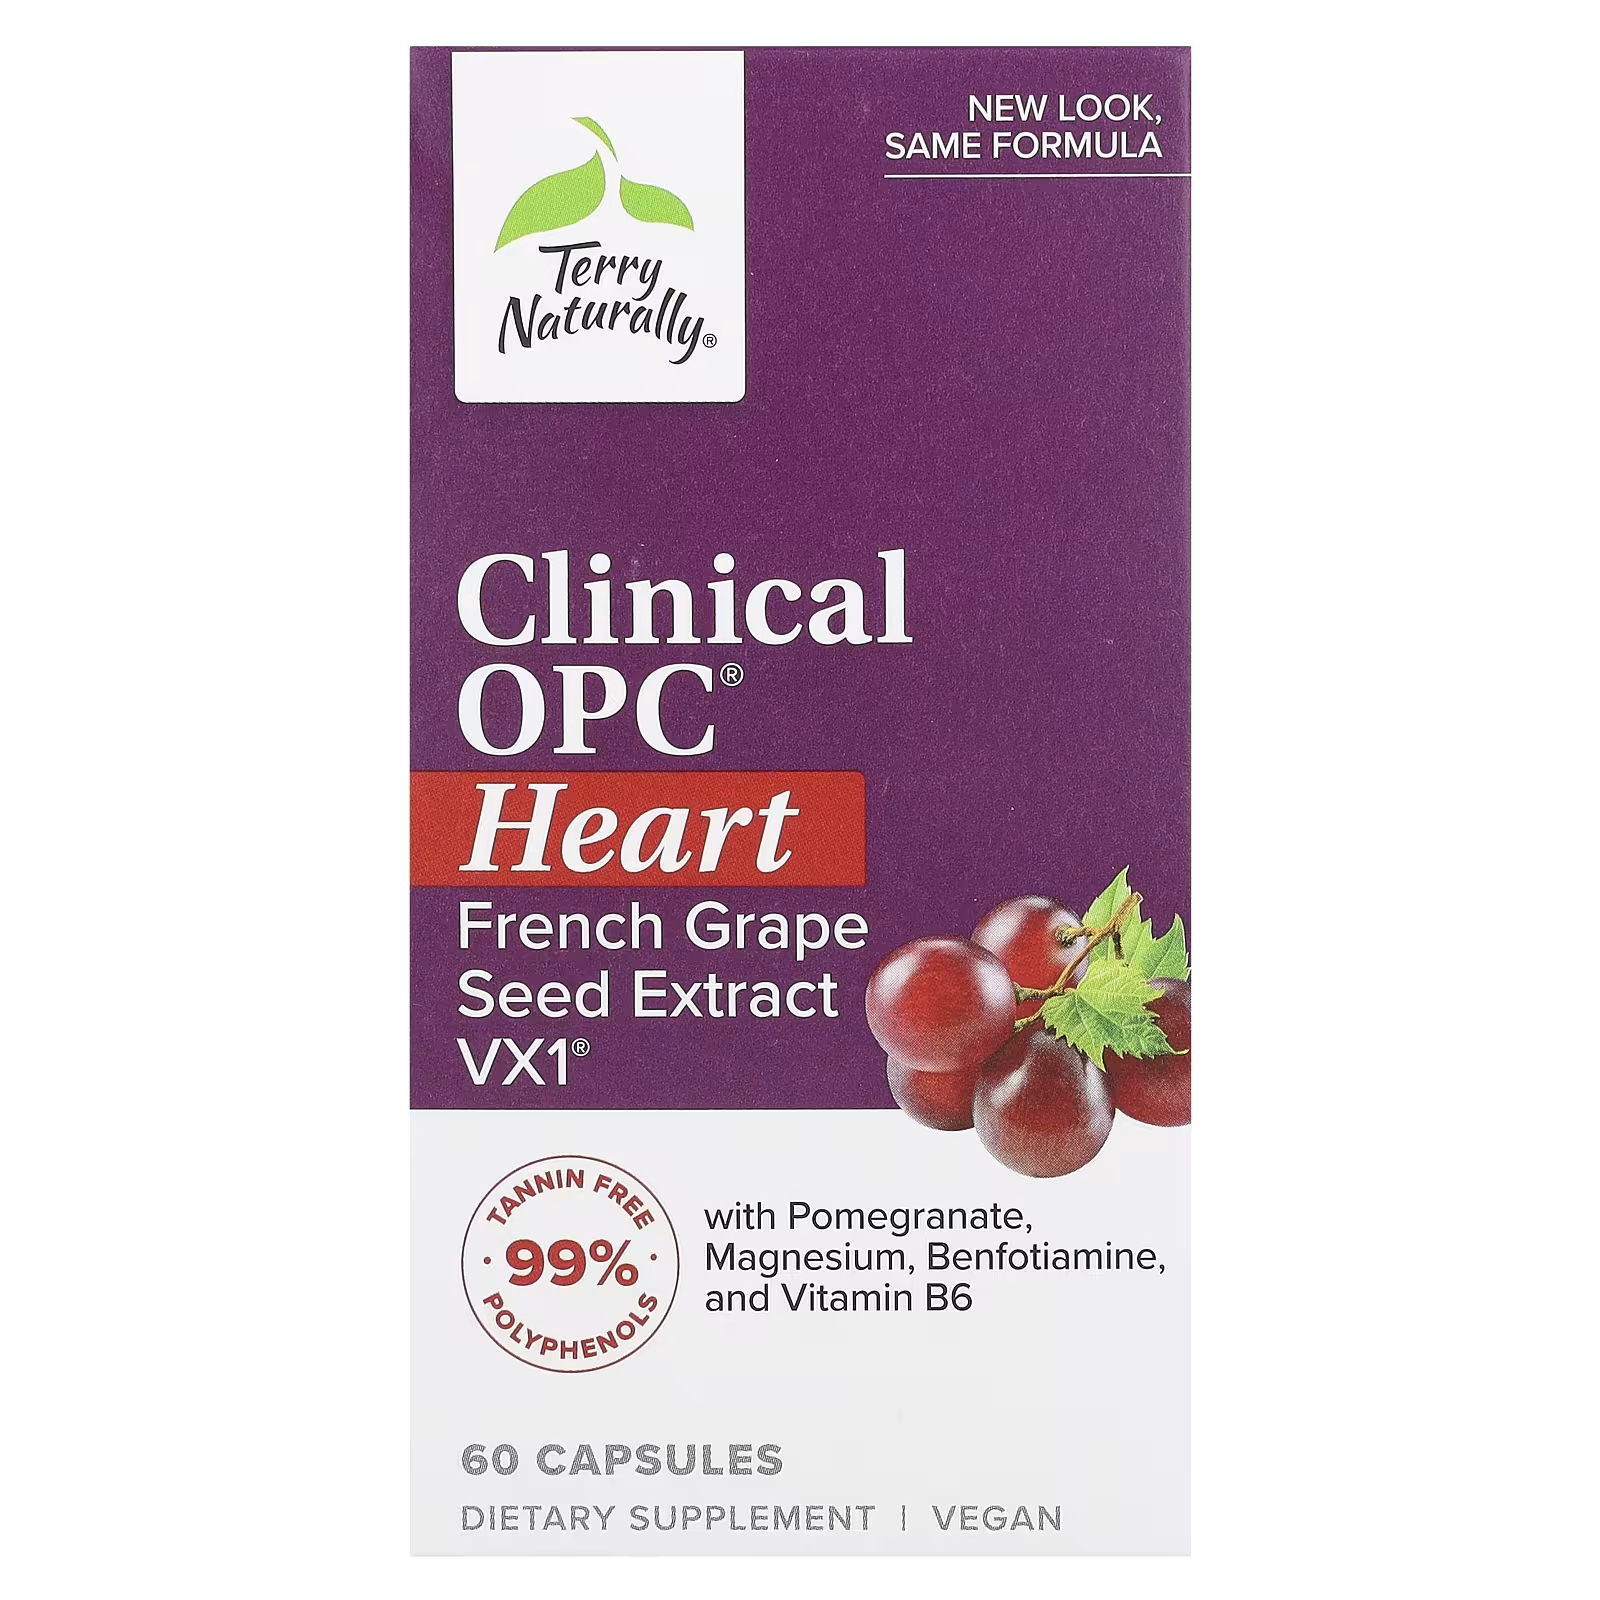 Пищевая добавка Terry Naturally Clinical OPC Heart для сердечно-сосудистой системы, 60 капсул фотовал mita elp opc ky2040hq совместимый